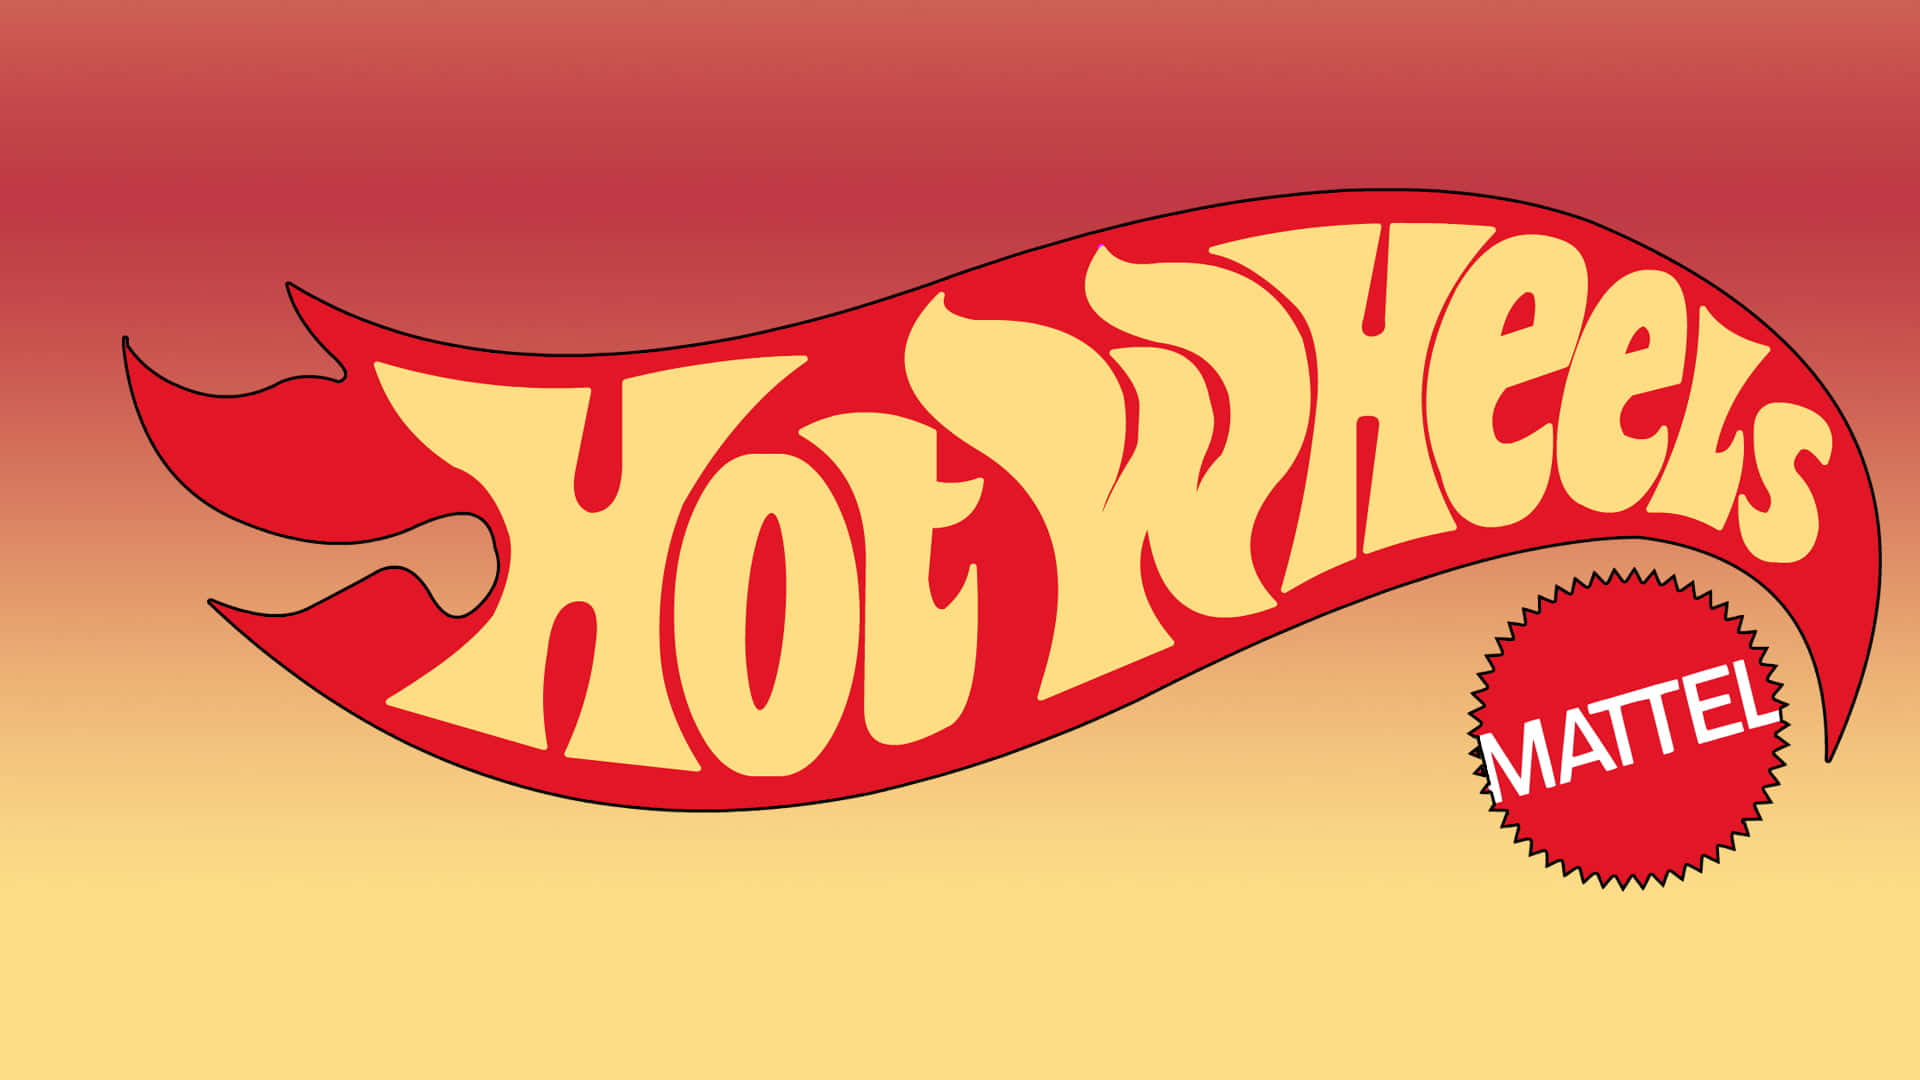 Logotipode Hot Wheels Con Una Llama